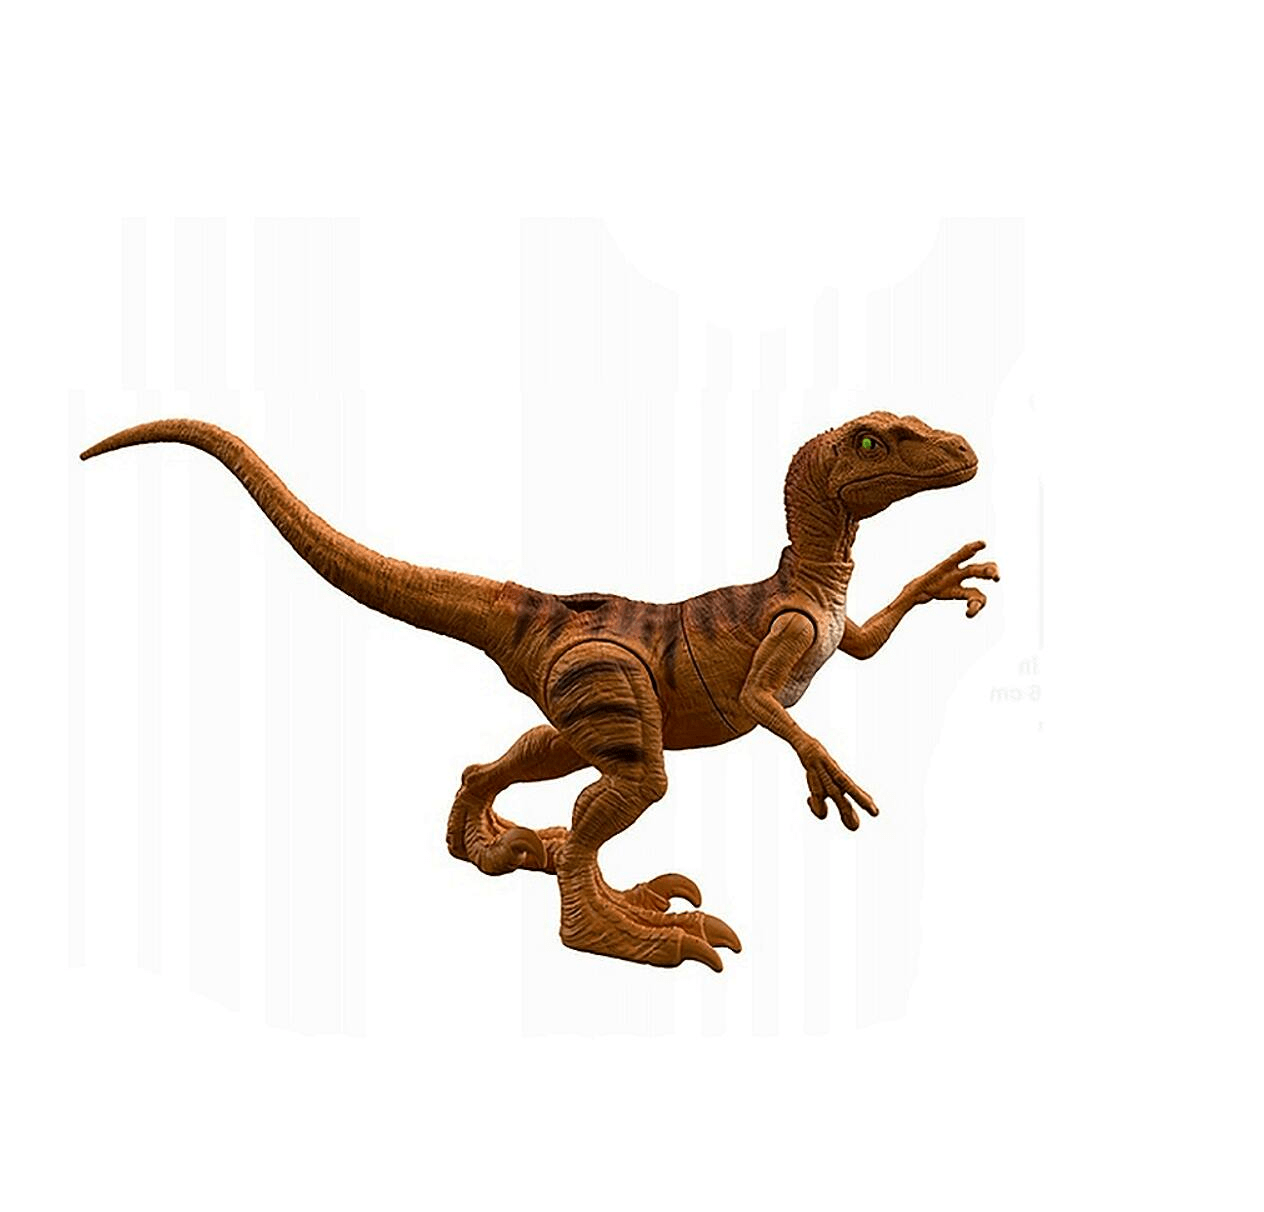 Dinossauro Velociraptor Boneco Jurássico + Jogo Double Dino em